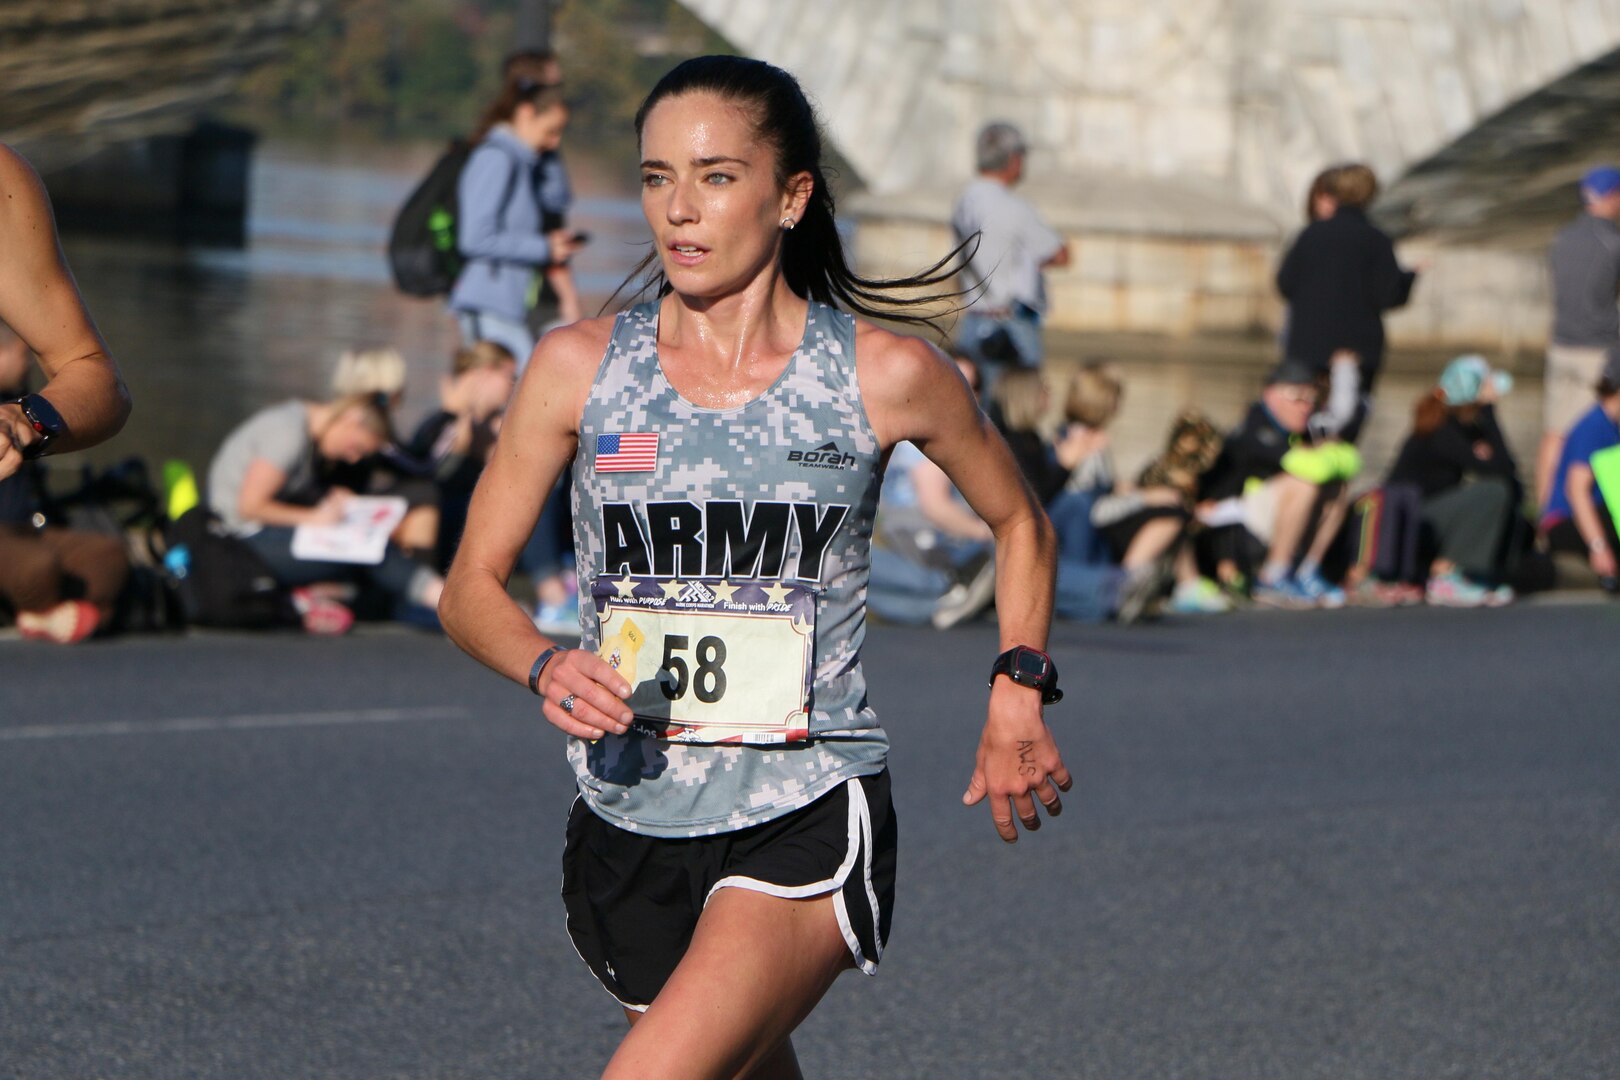 2017 Armed Forces Marathon